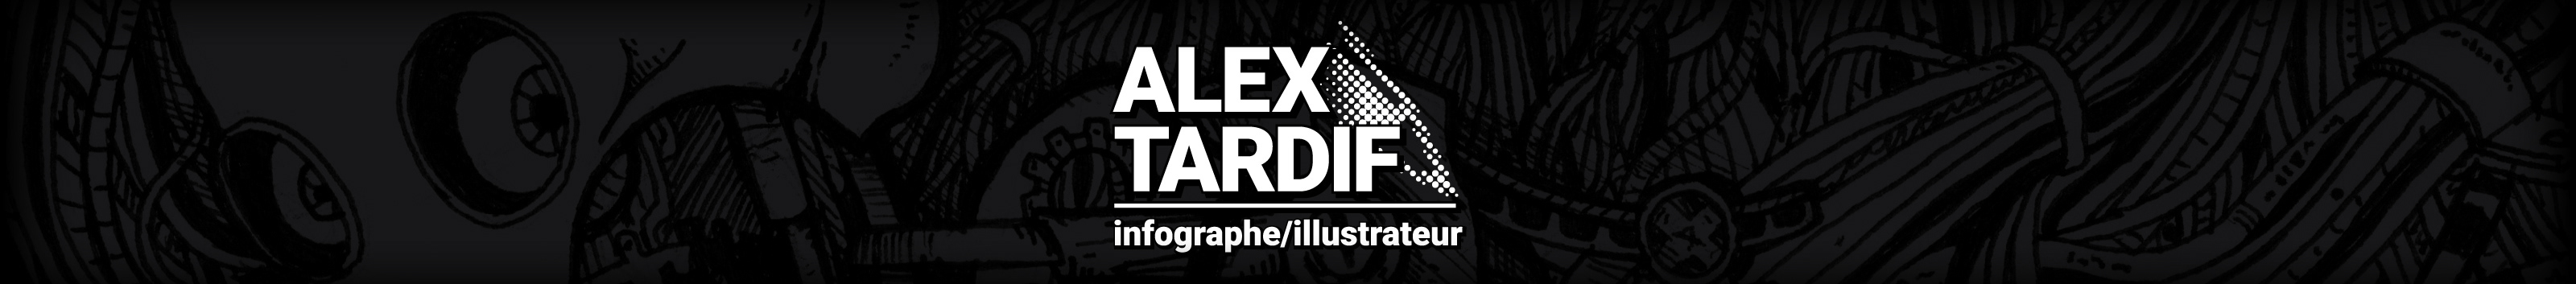 Banner de perfil de Alex Tardif